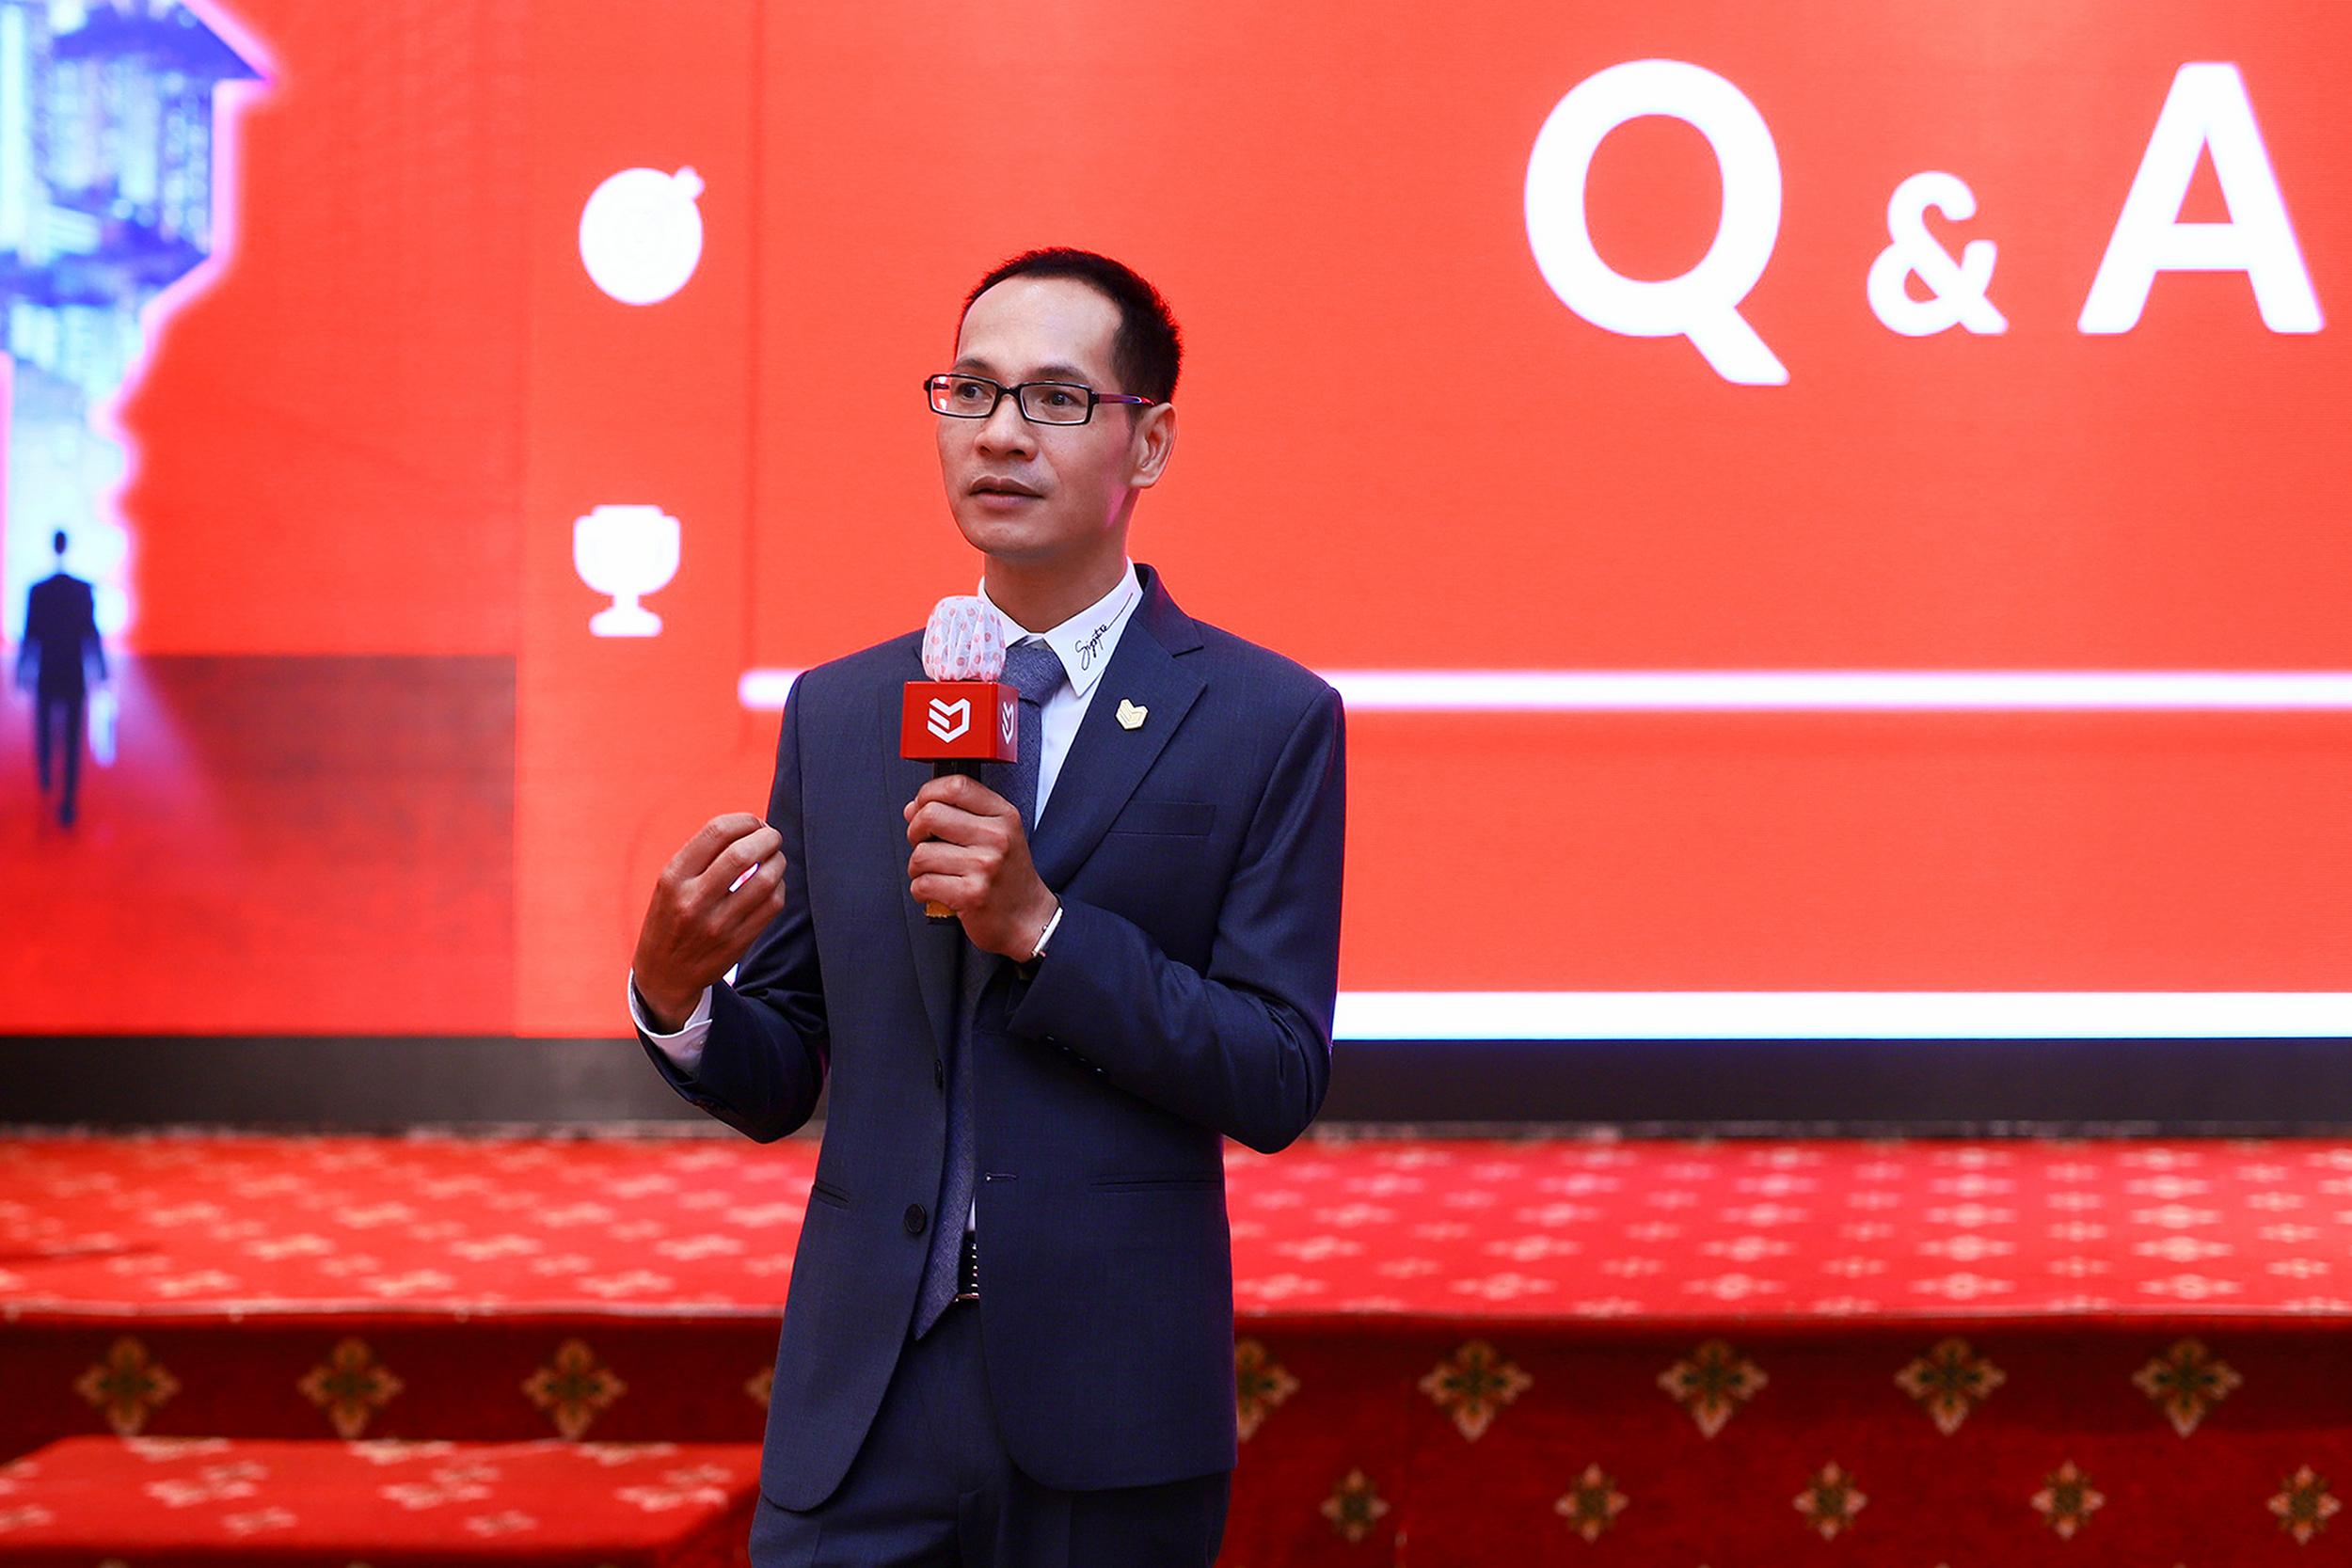 Ông Nguyễn Hoàng - Giám đốc R&D DKRA Vietnam thành viên DKRA Vietnam giải đáp các thắc mắc của khách tham dự trong phần Q&A.